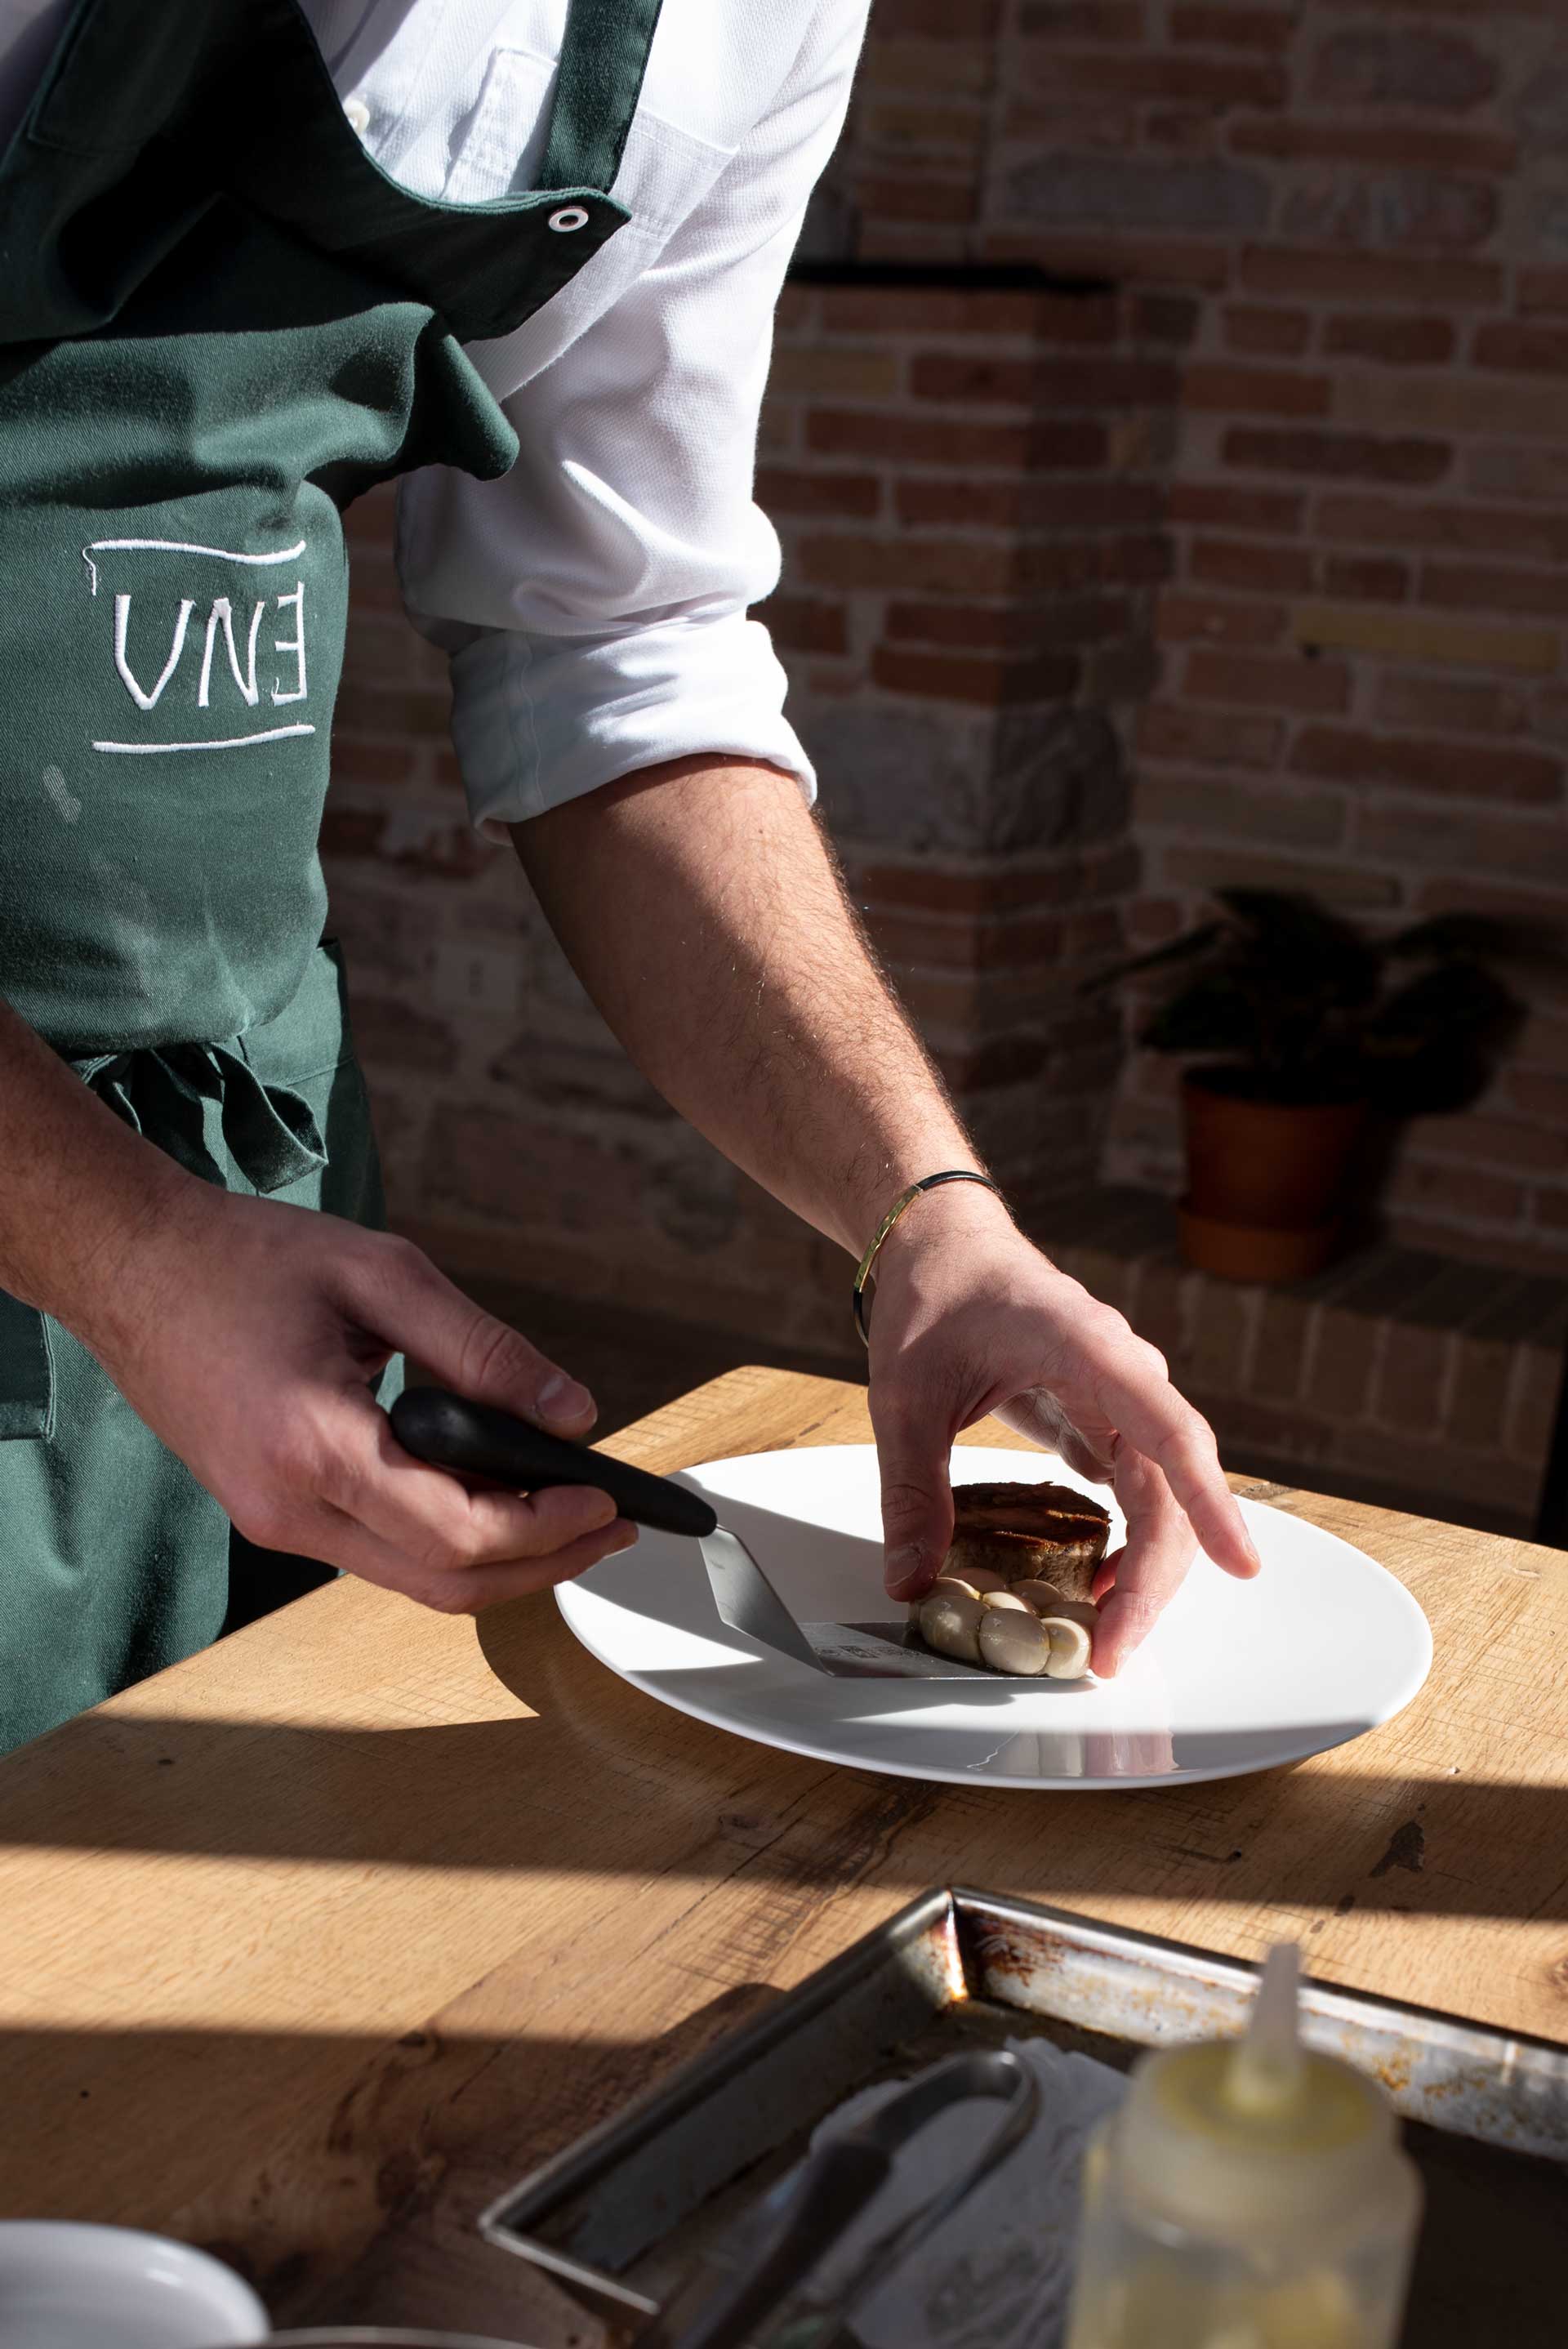 officina-visiva-foto-food-chef-giulio-gigli-ristorante-une-cookist-03